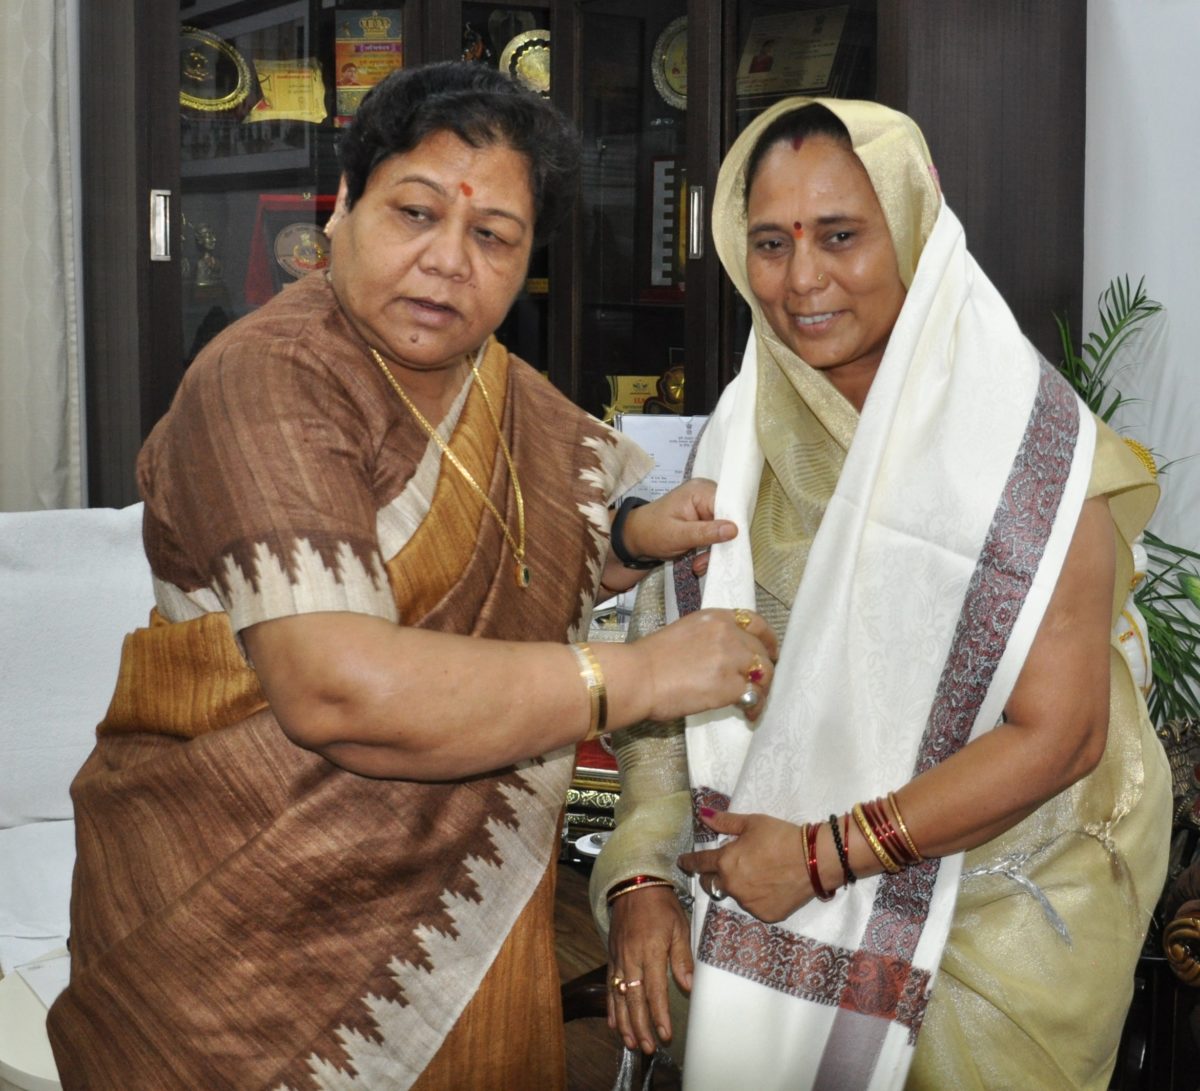 रायपुर :  महिलाओं को सशक्त बनाने का कार्य सराहनीय: सुश्री उइके : राज्यपाल को श्रीमती फुलबासन यादव ने महिला समूहों के कार्य का अवलोकन के लिए दिया निमंत्रण